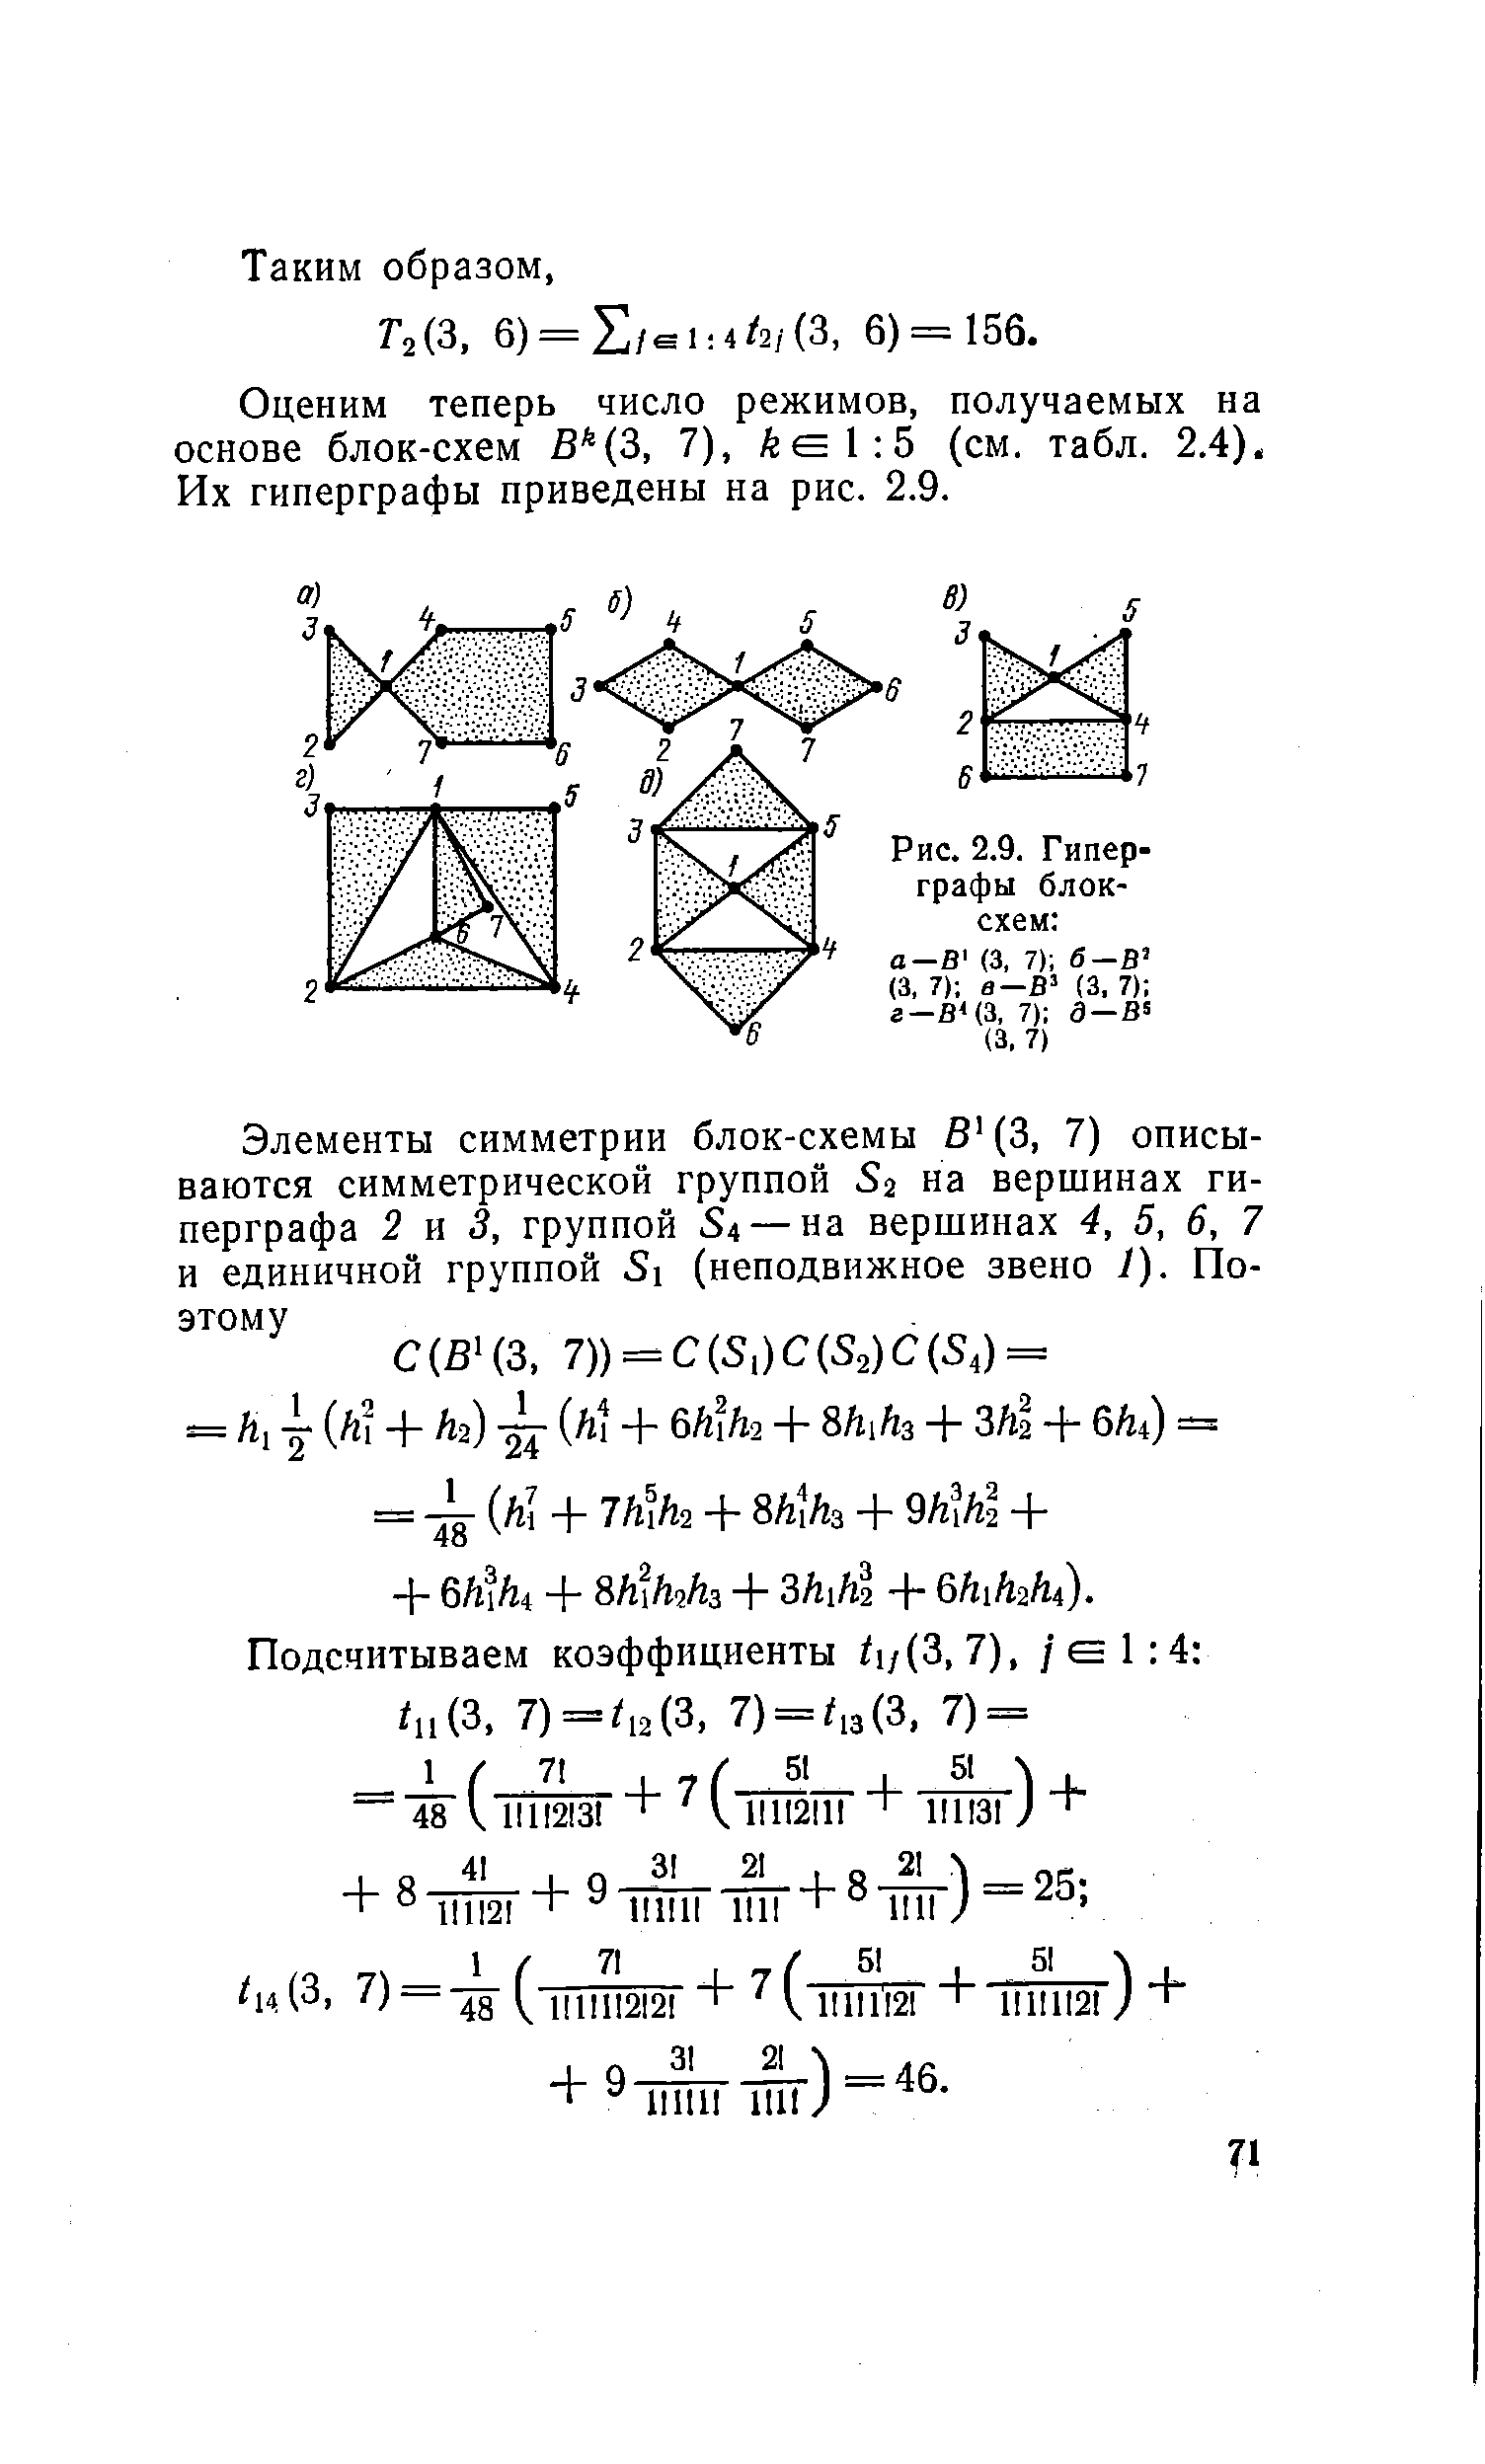 Рис. 2.9. Гиперграфы блок-схем а—В (3, 7) б—
